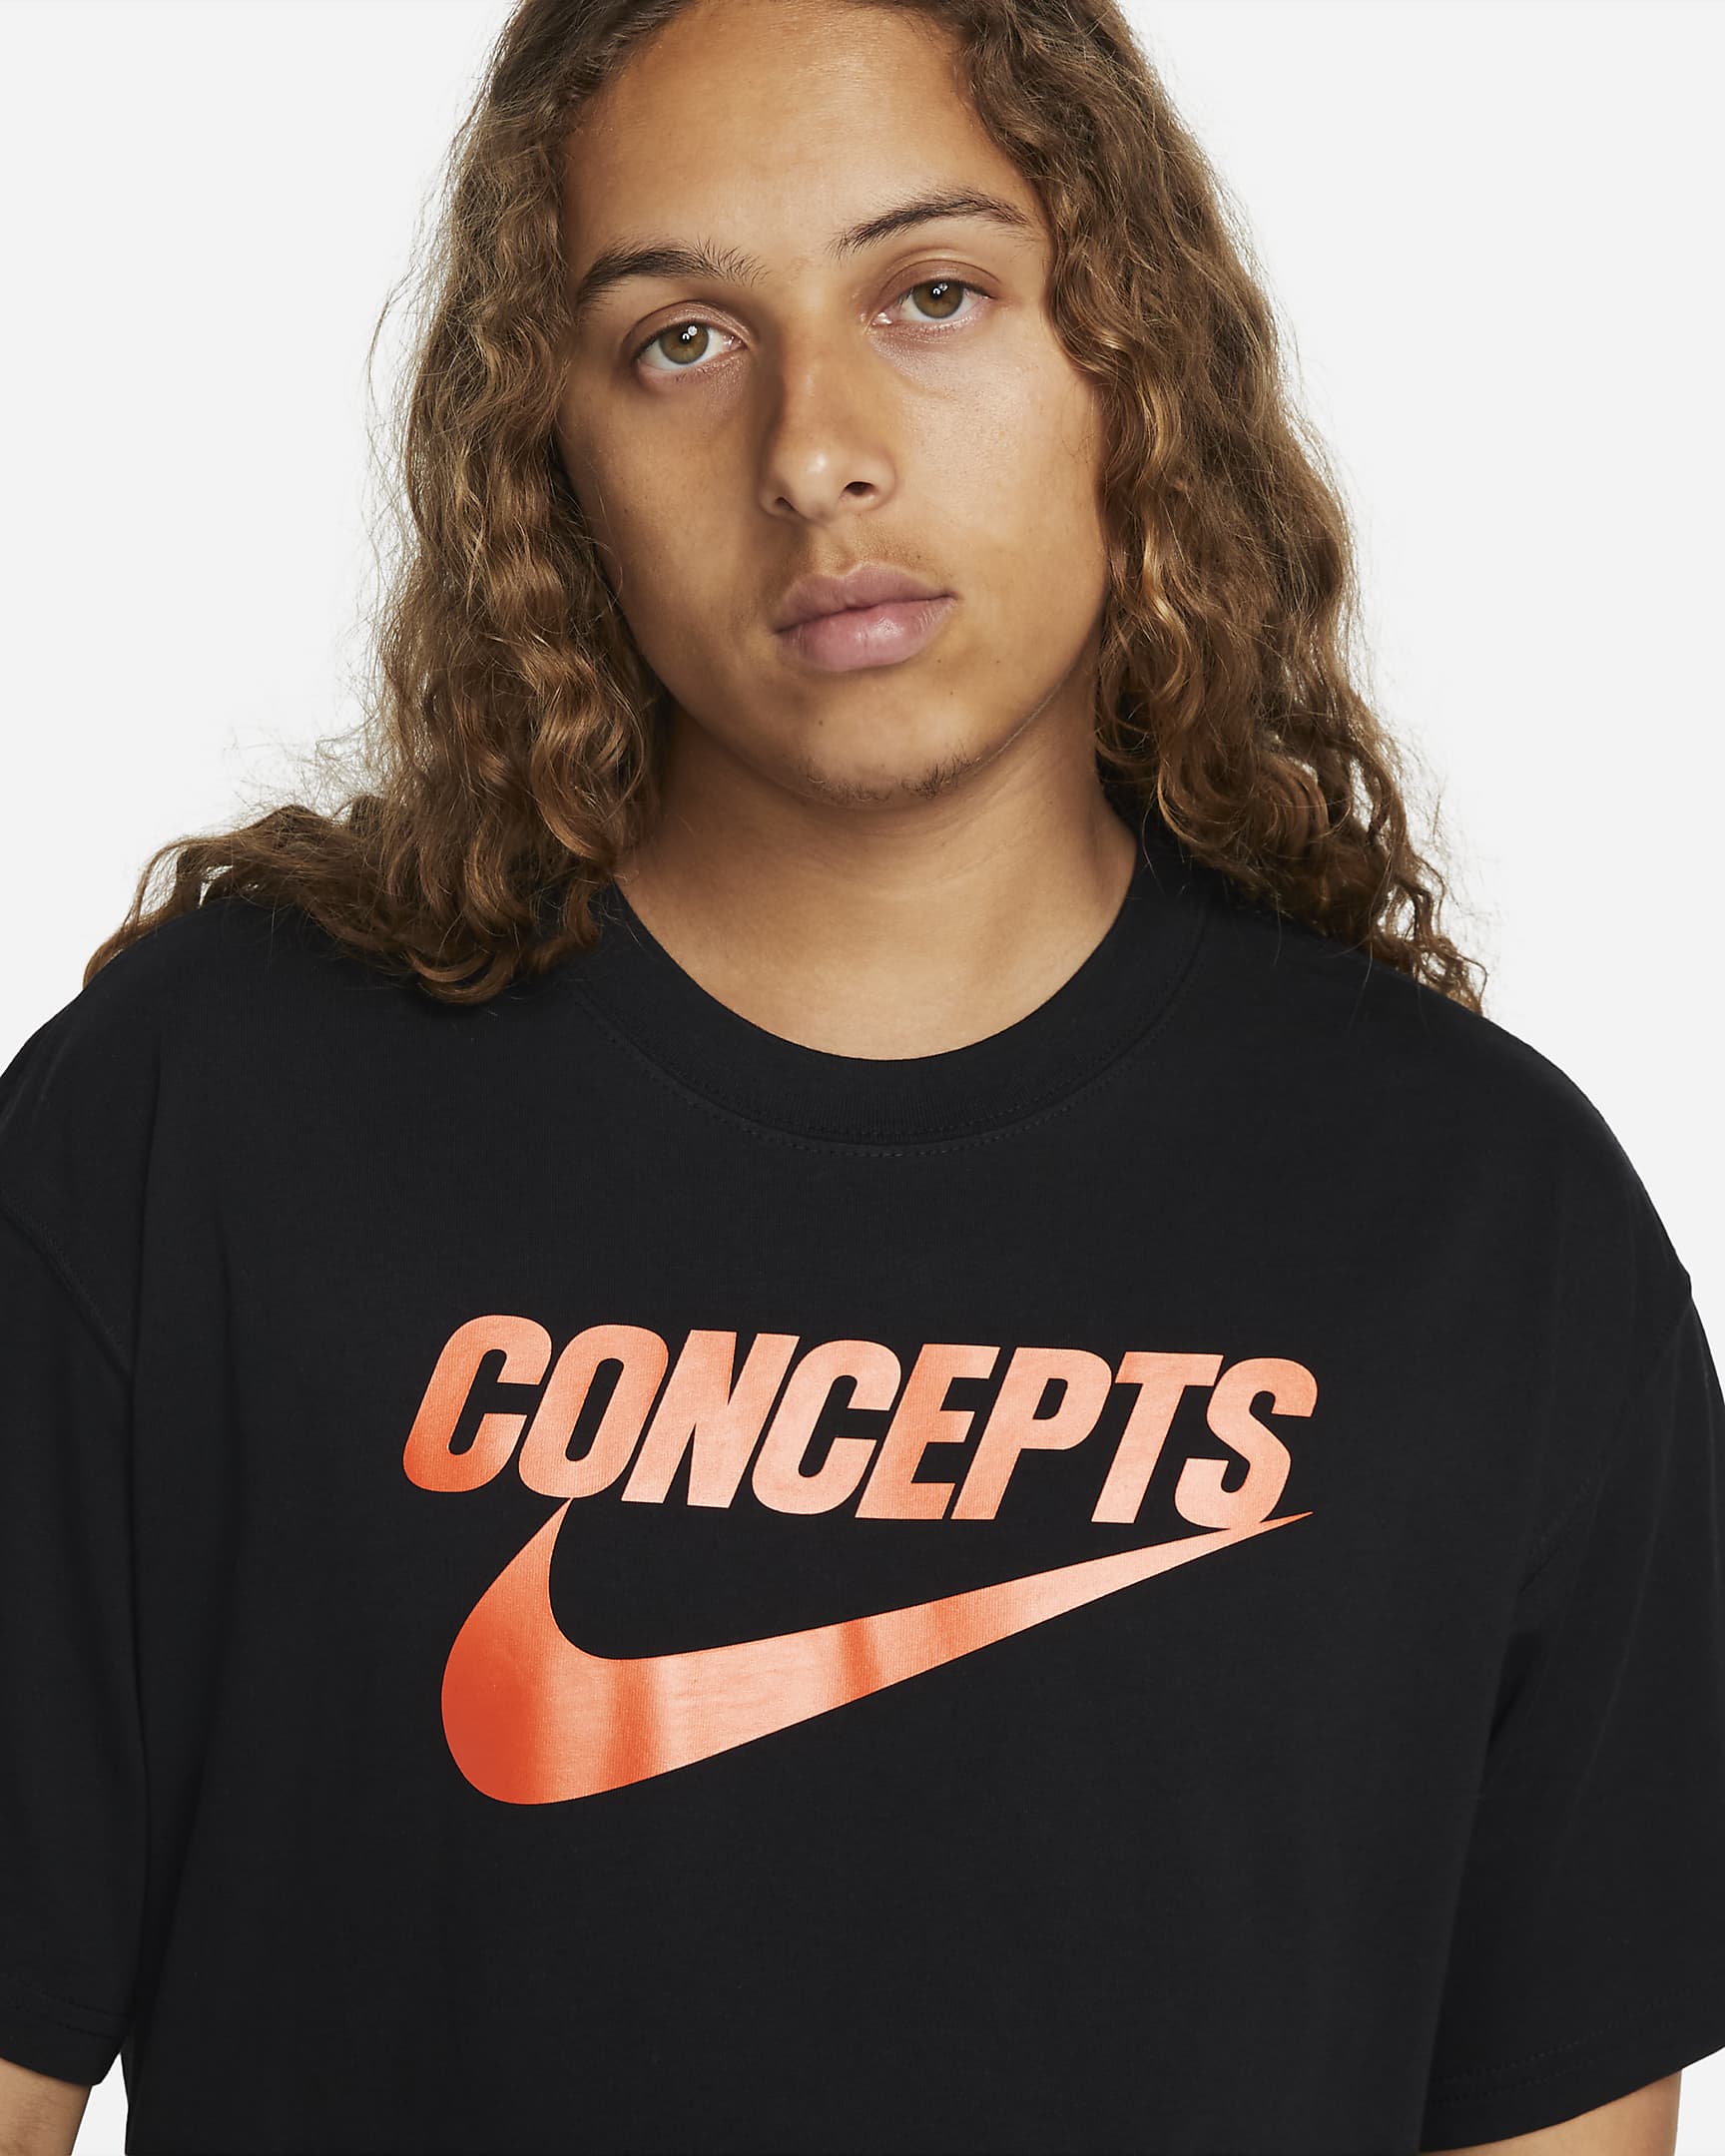 Nike SB x Concepts Men's Skate T-Shirt. Nike UK